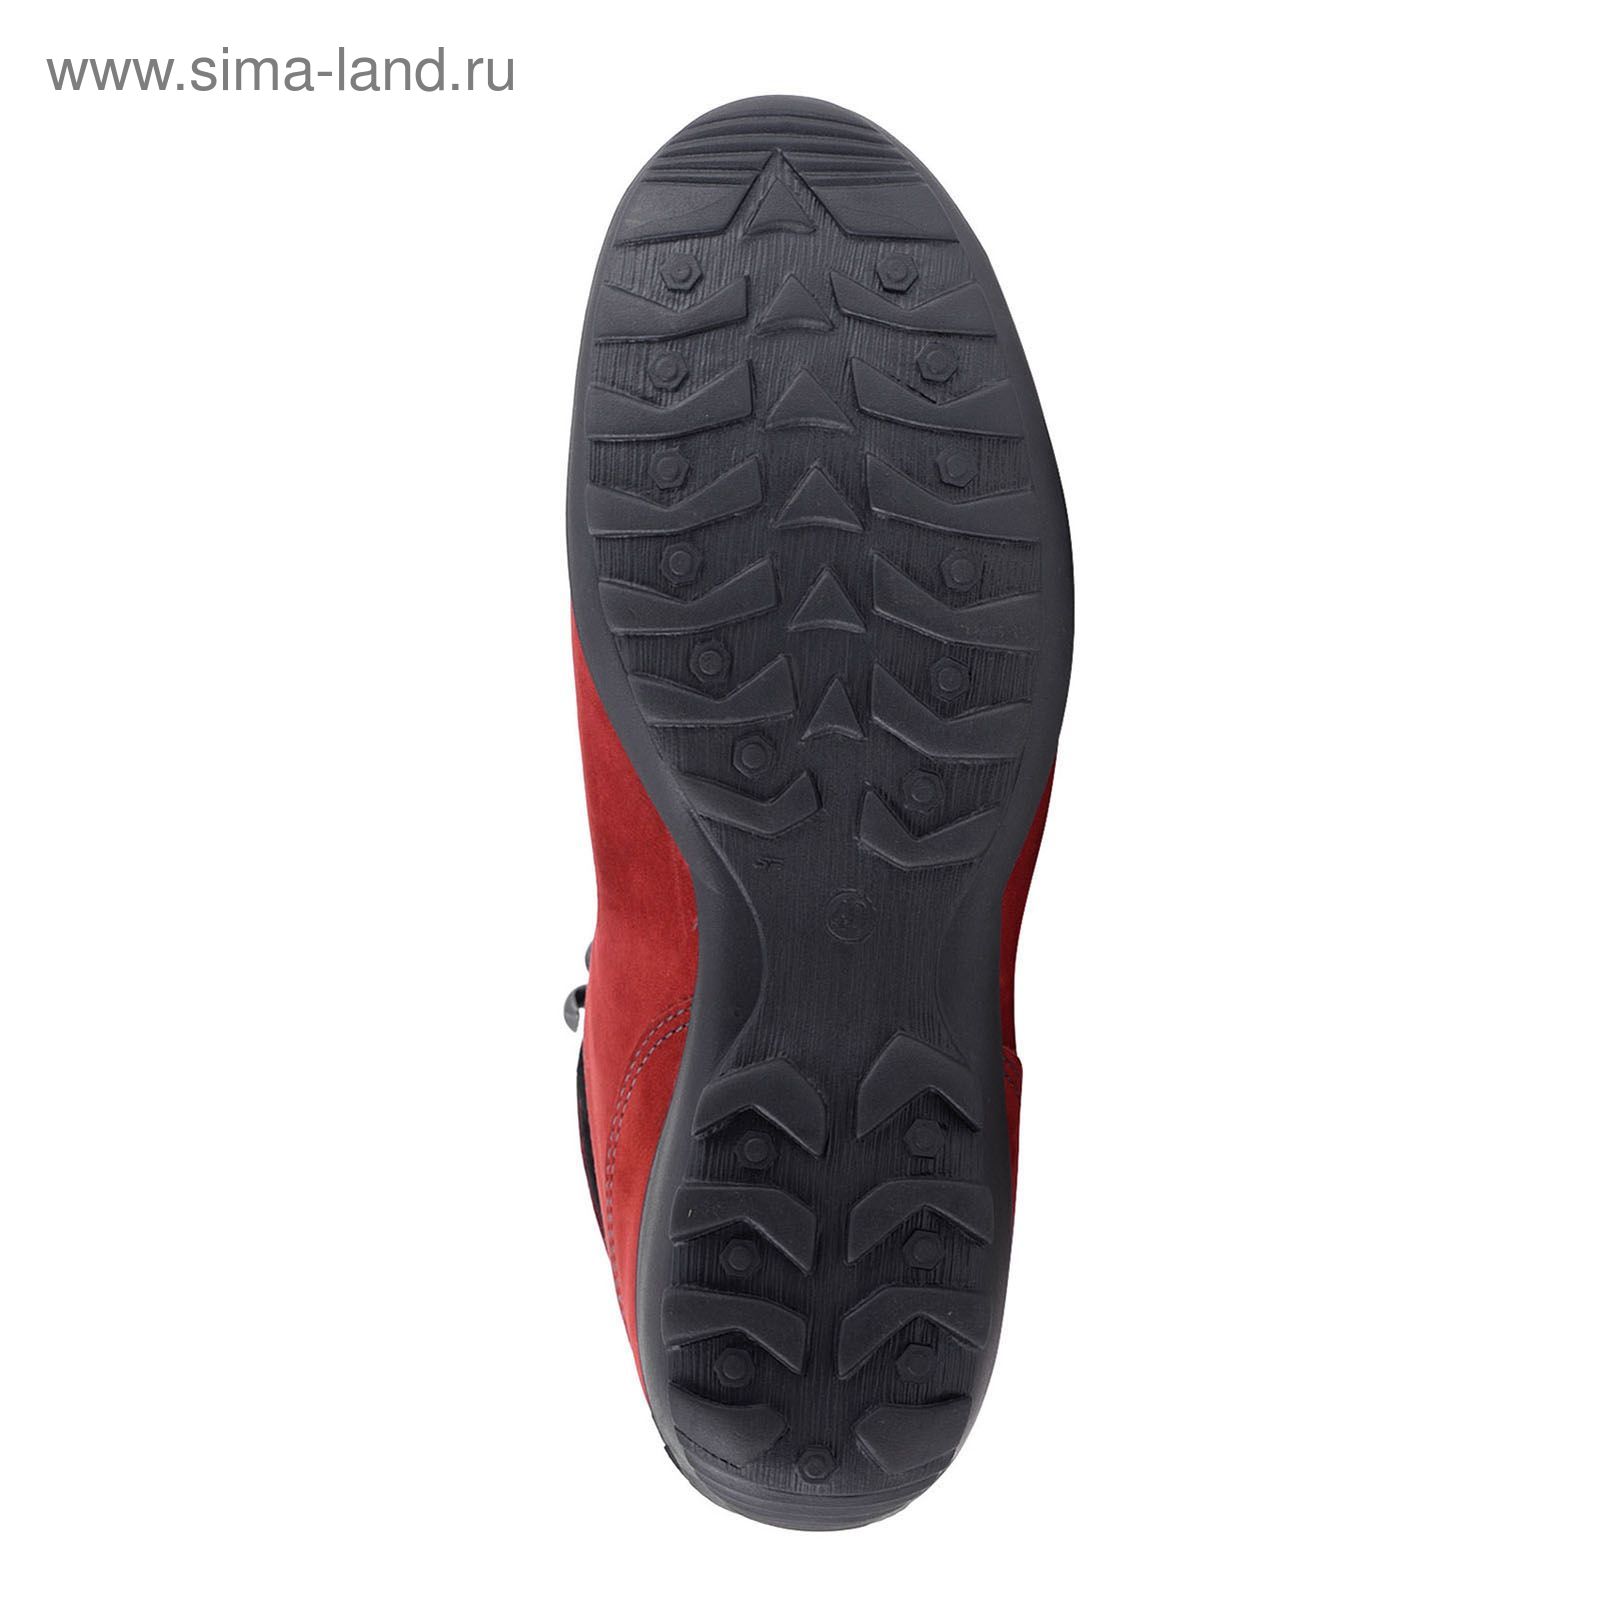 Ботинки TREK Спринт 93-19 мех (темно-красный) (р.36)